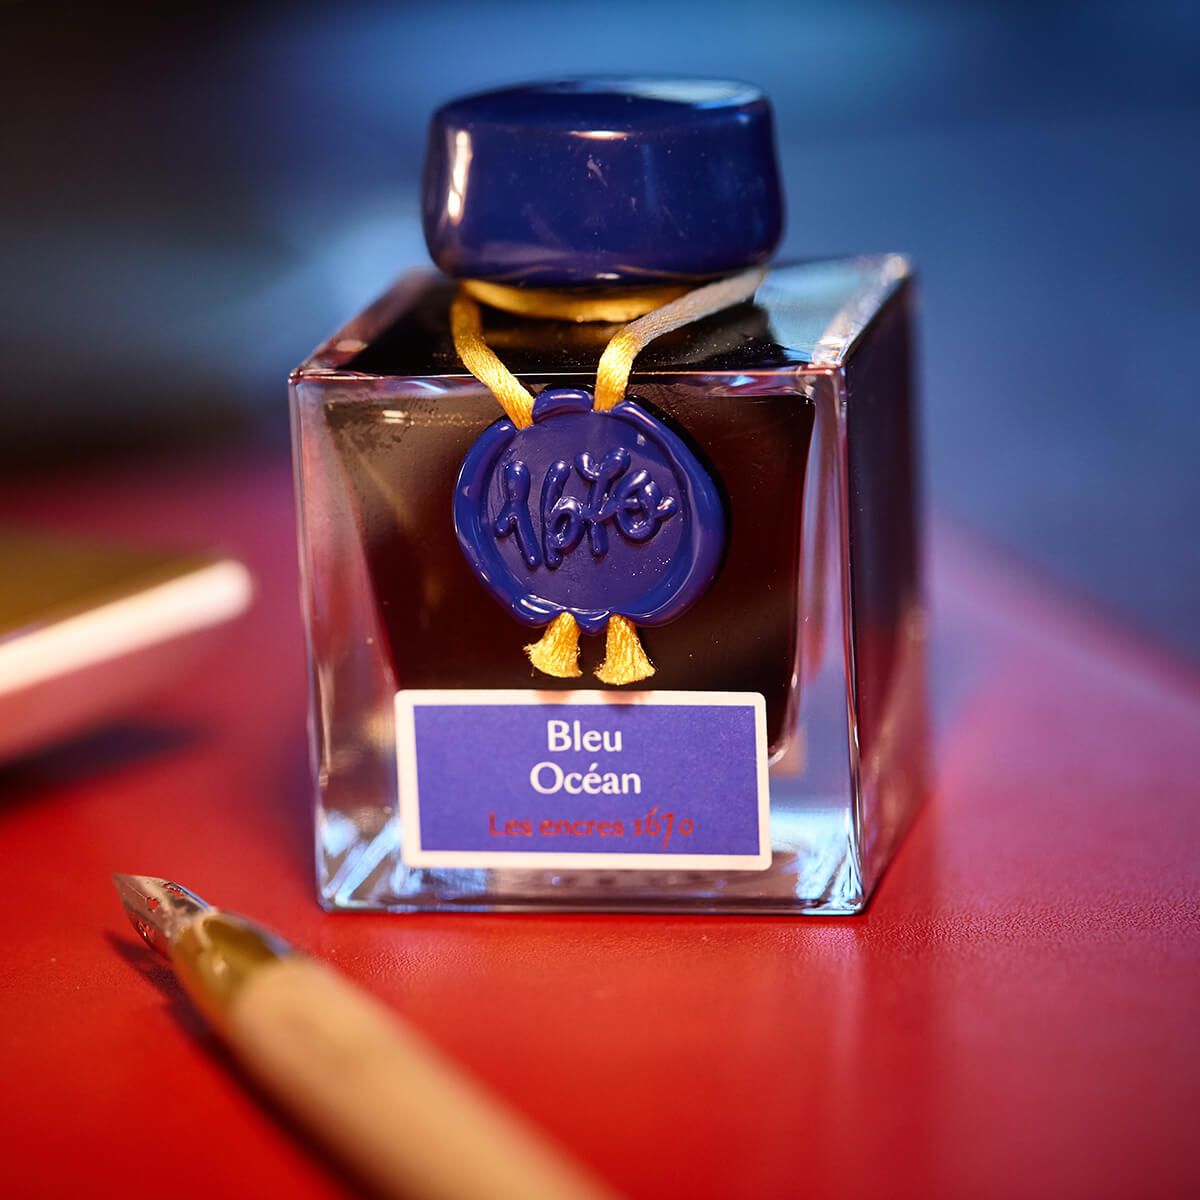 J. Herbin 1670 Fountain Pen Ink - Blue Ocean - 50 ml. Bottle